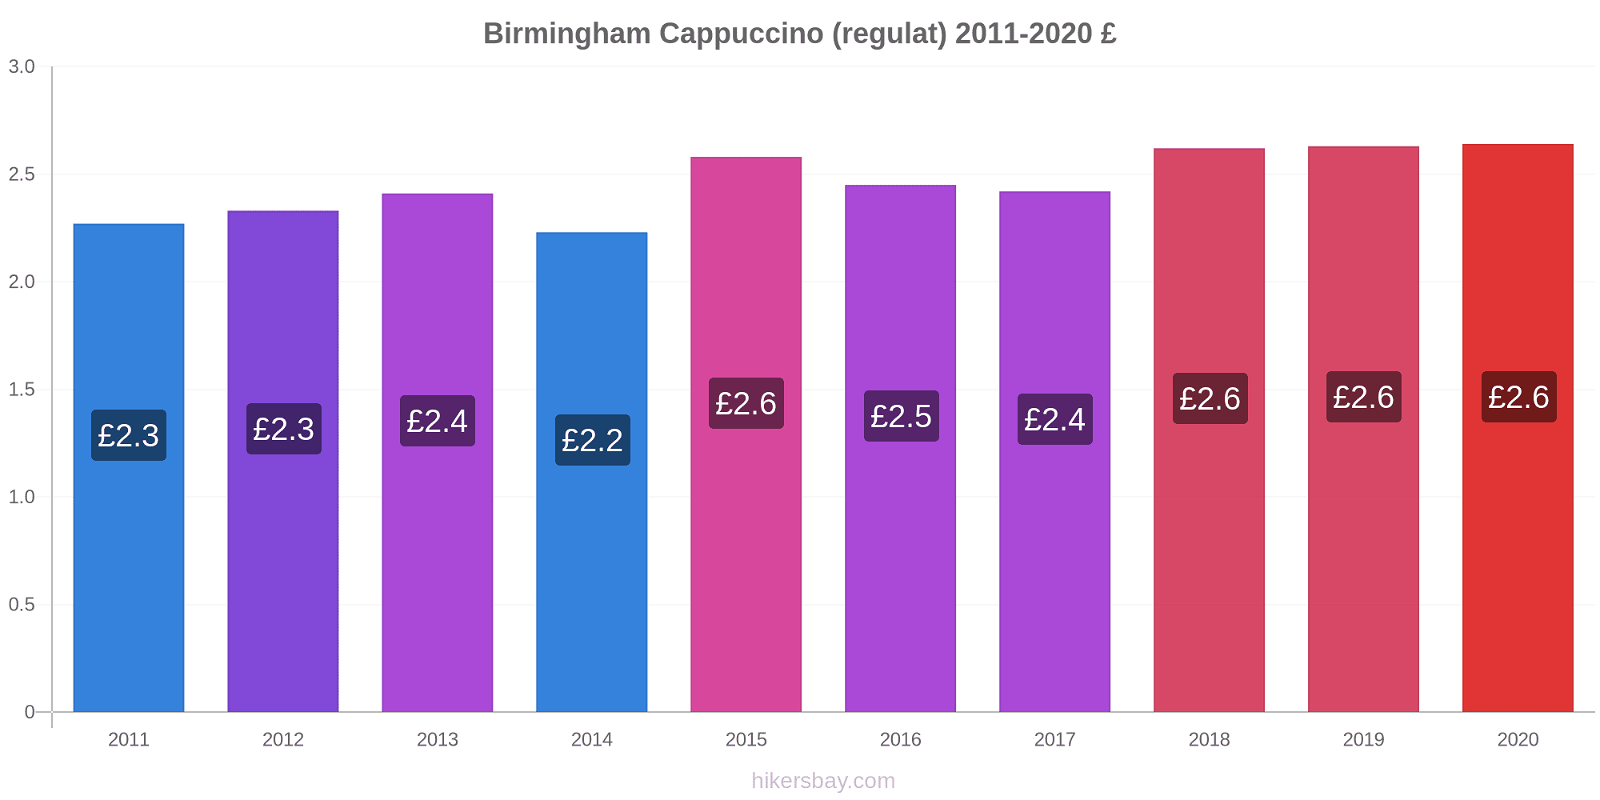 Birmingham modificări de preț Cappuccino (regulat) hikersbay.com